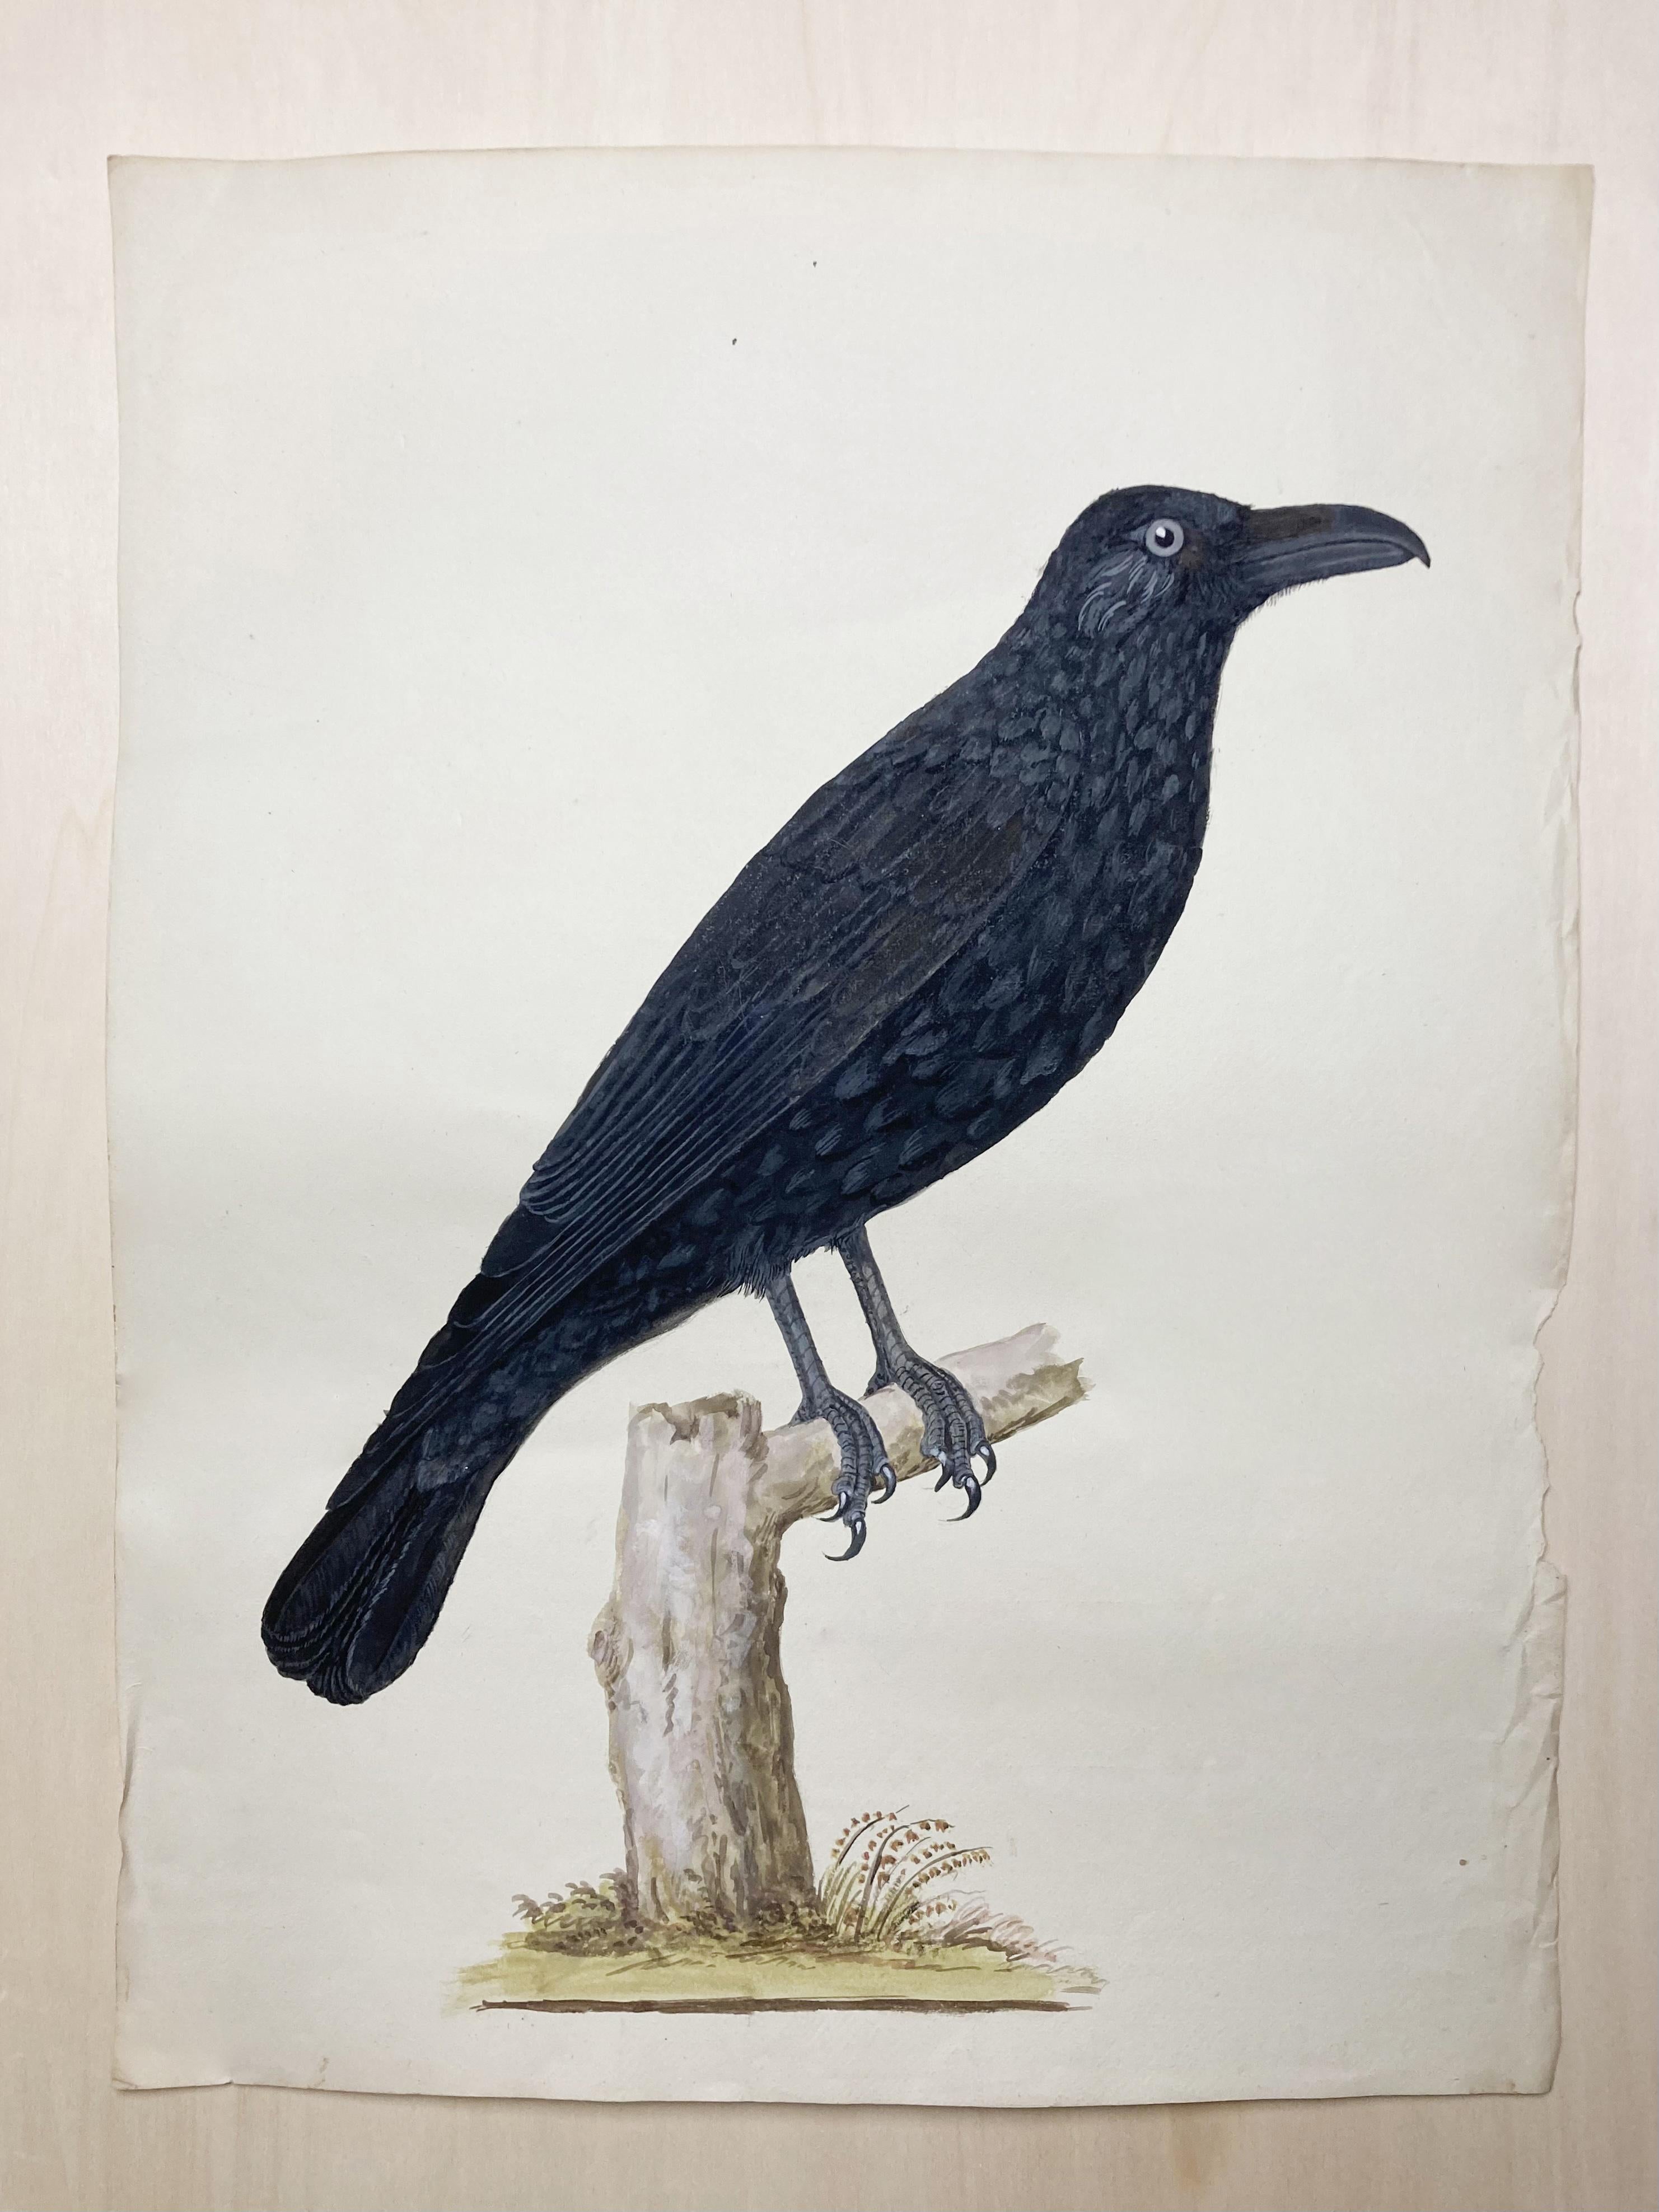 Peter Paillou Animal Art – Tierzeichnung einer sitzenden Krähe in Schwarz von einem aufgeklärten britischen Maler